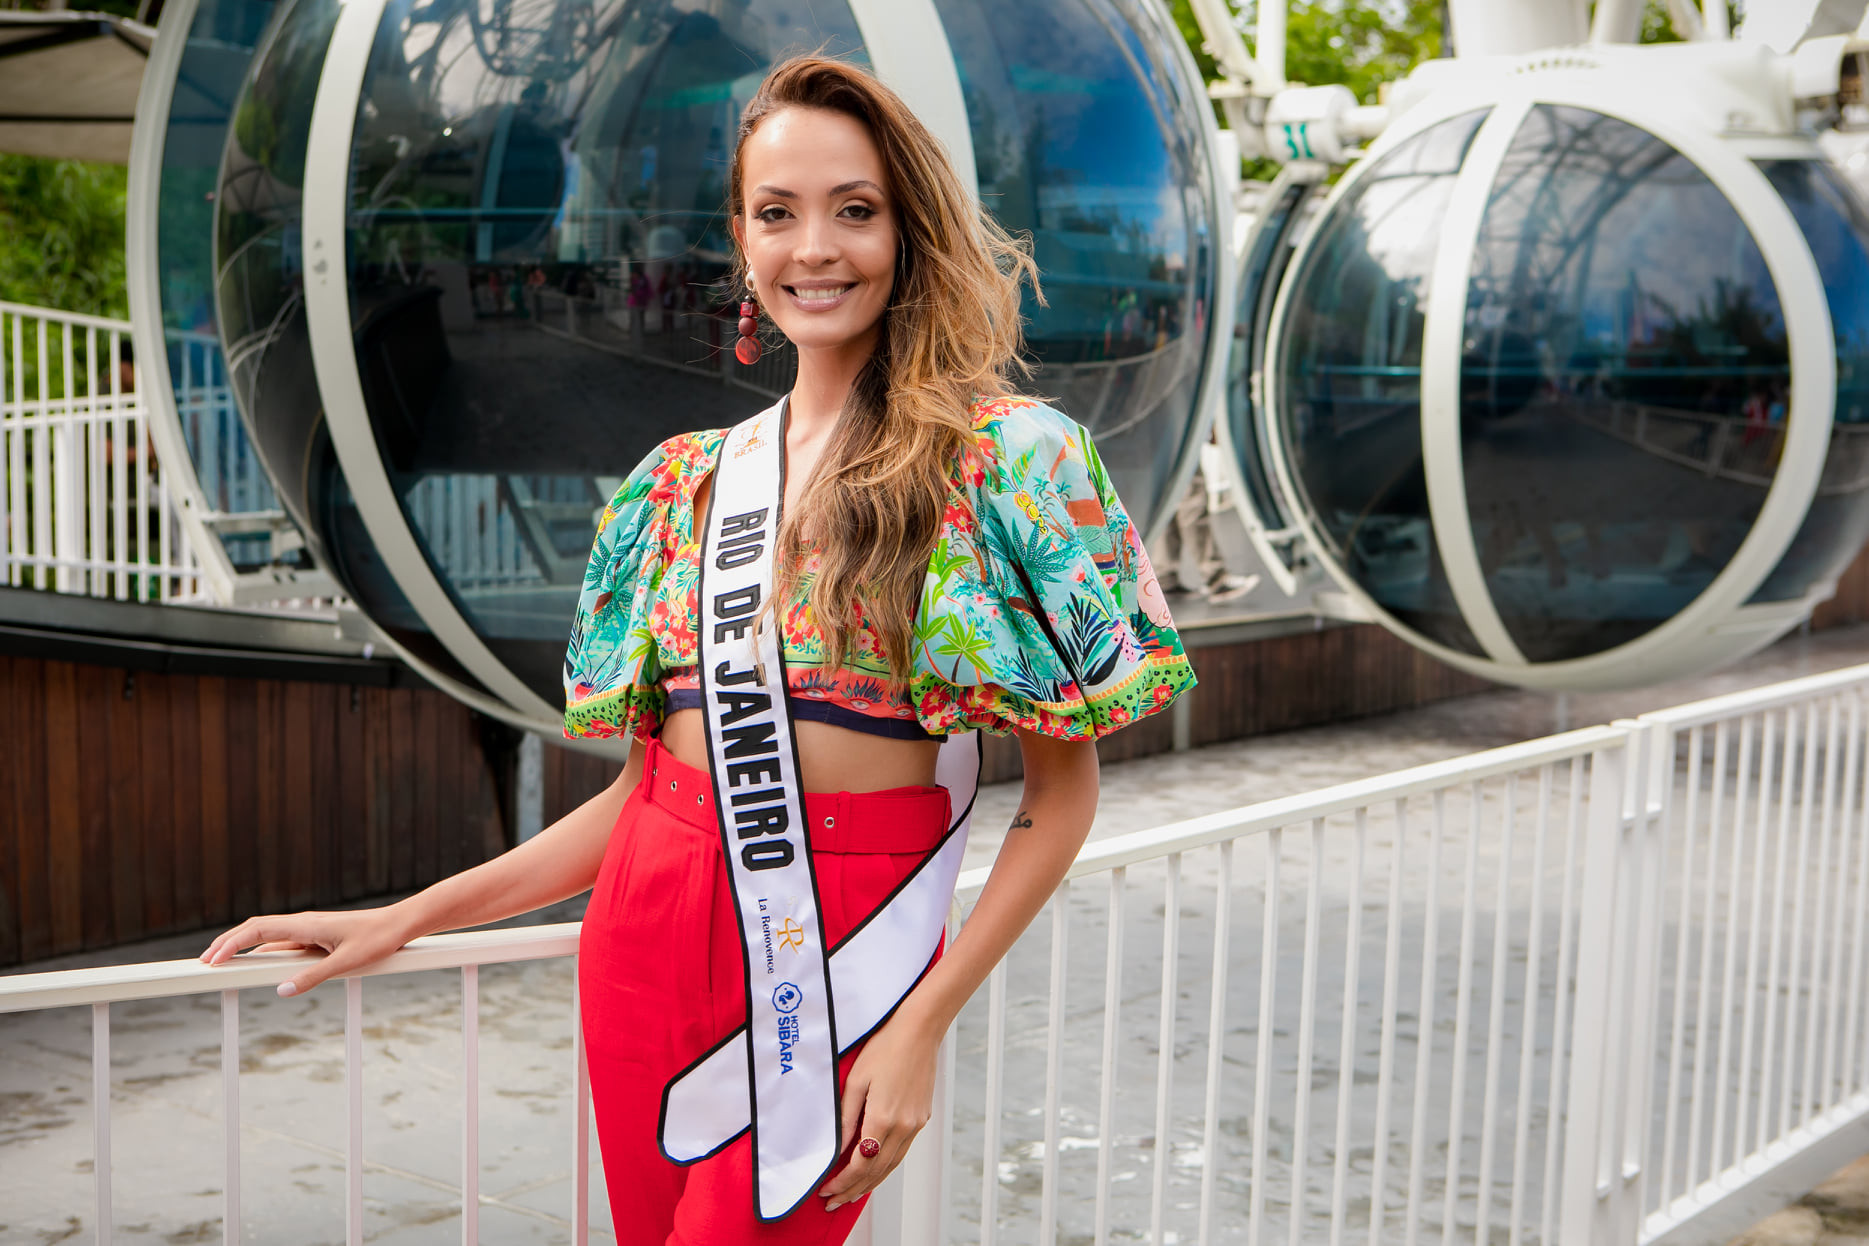 candidatas a miss supranational brazil 2022. (vencedora: miss parana). - Página 32 WEydsj